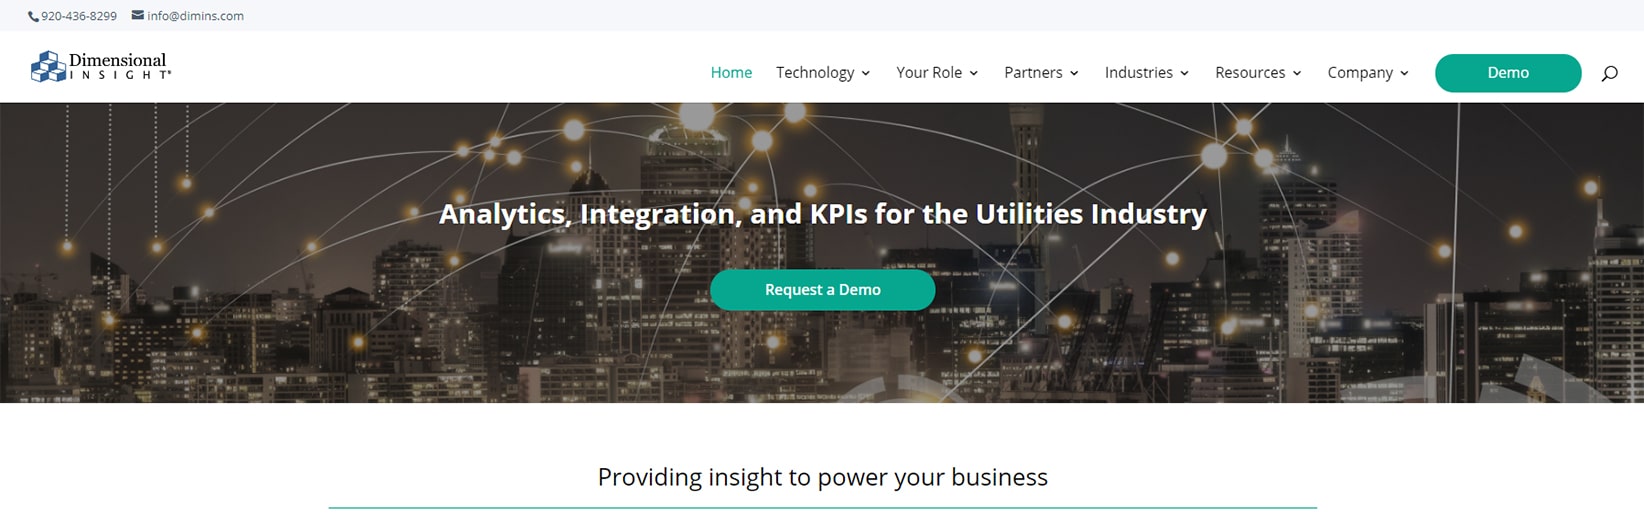 Screen capture showing the Utilities Analytics website homepage